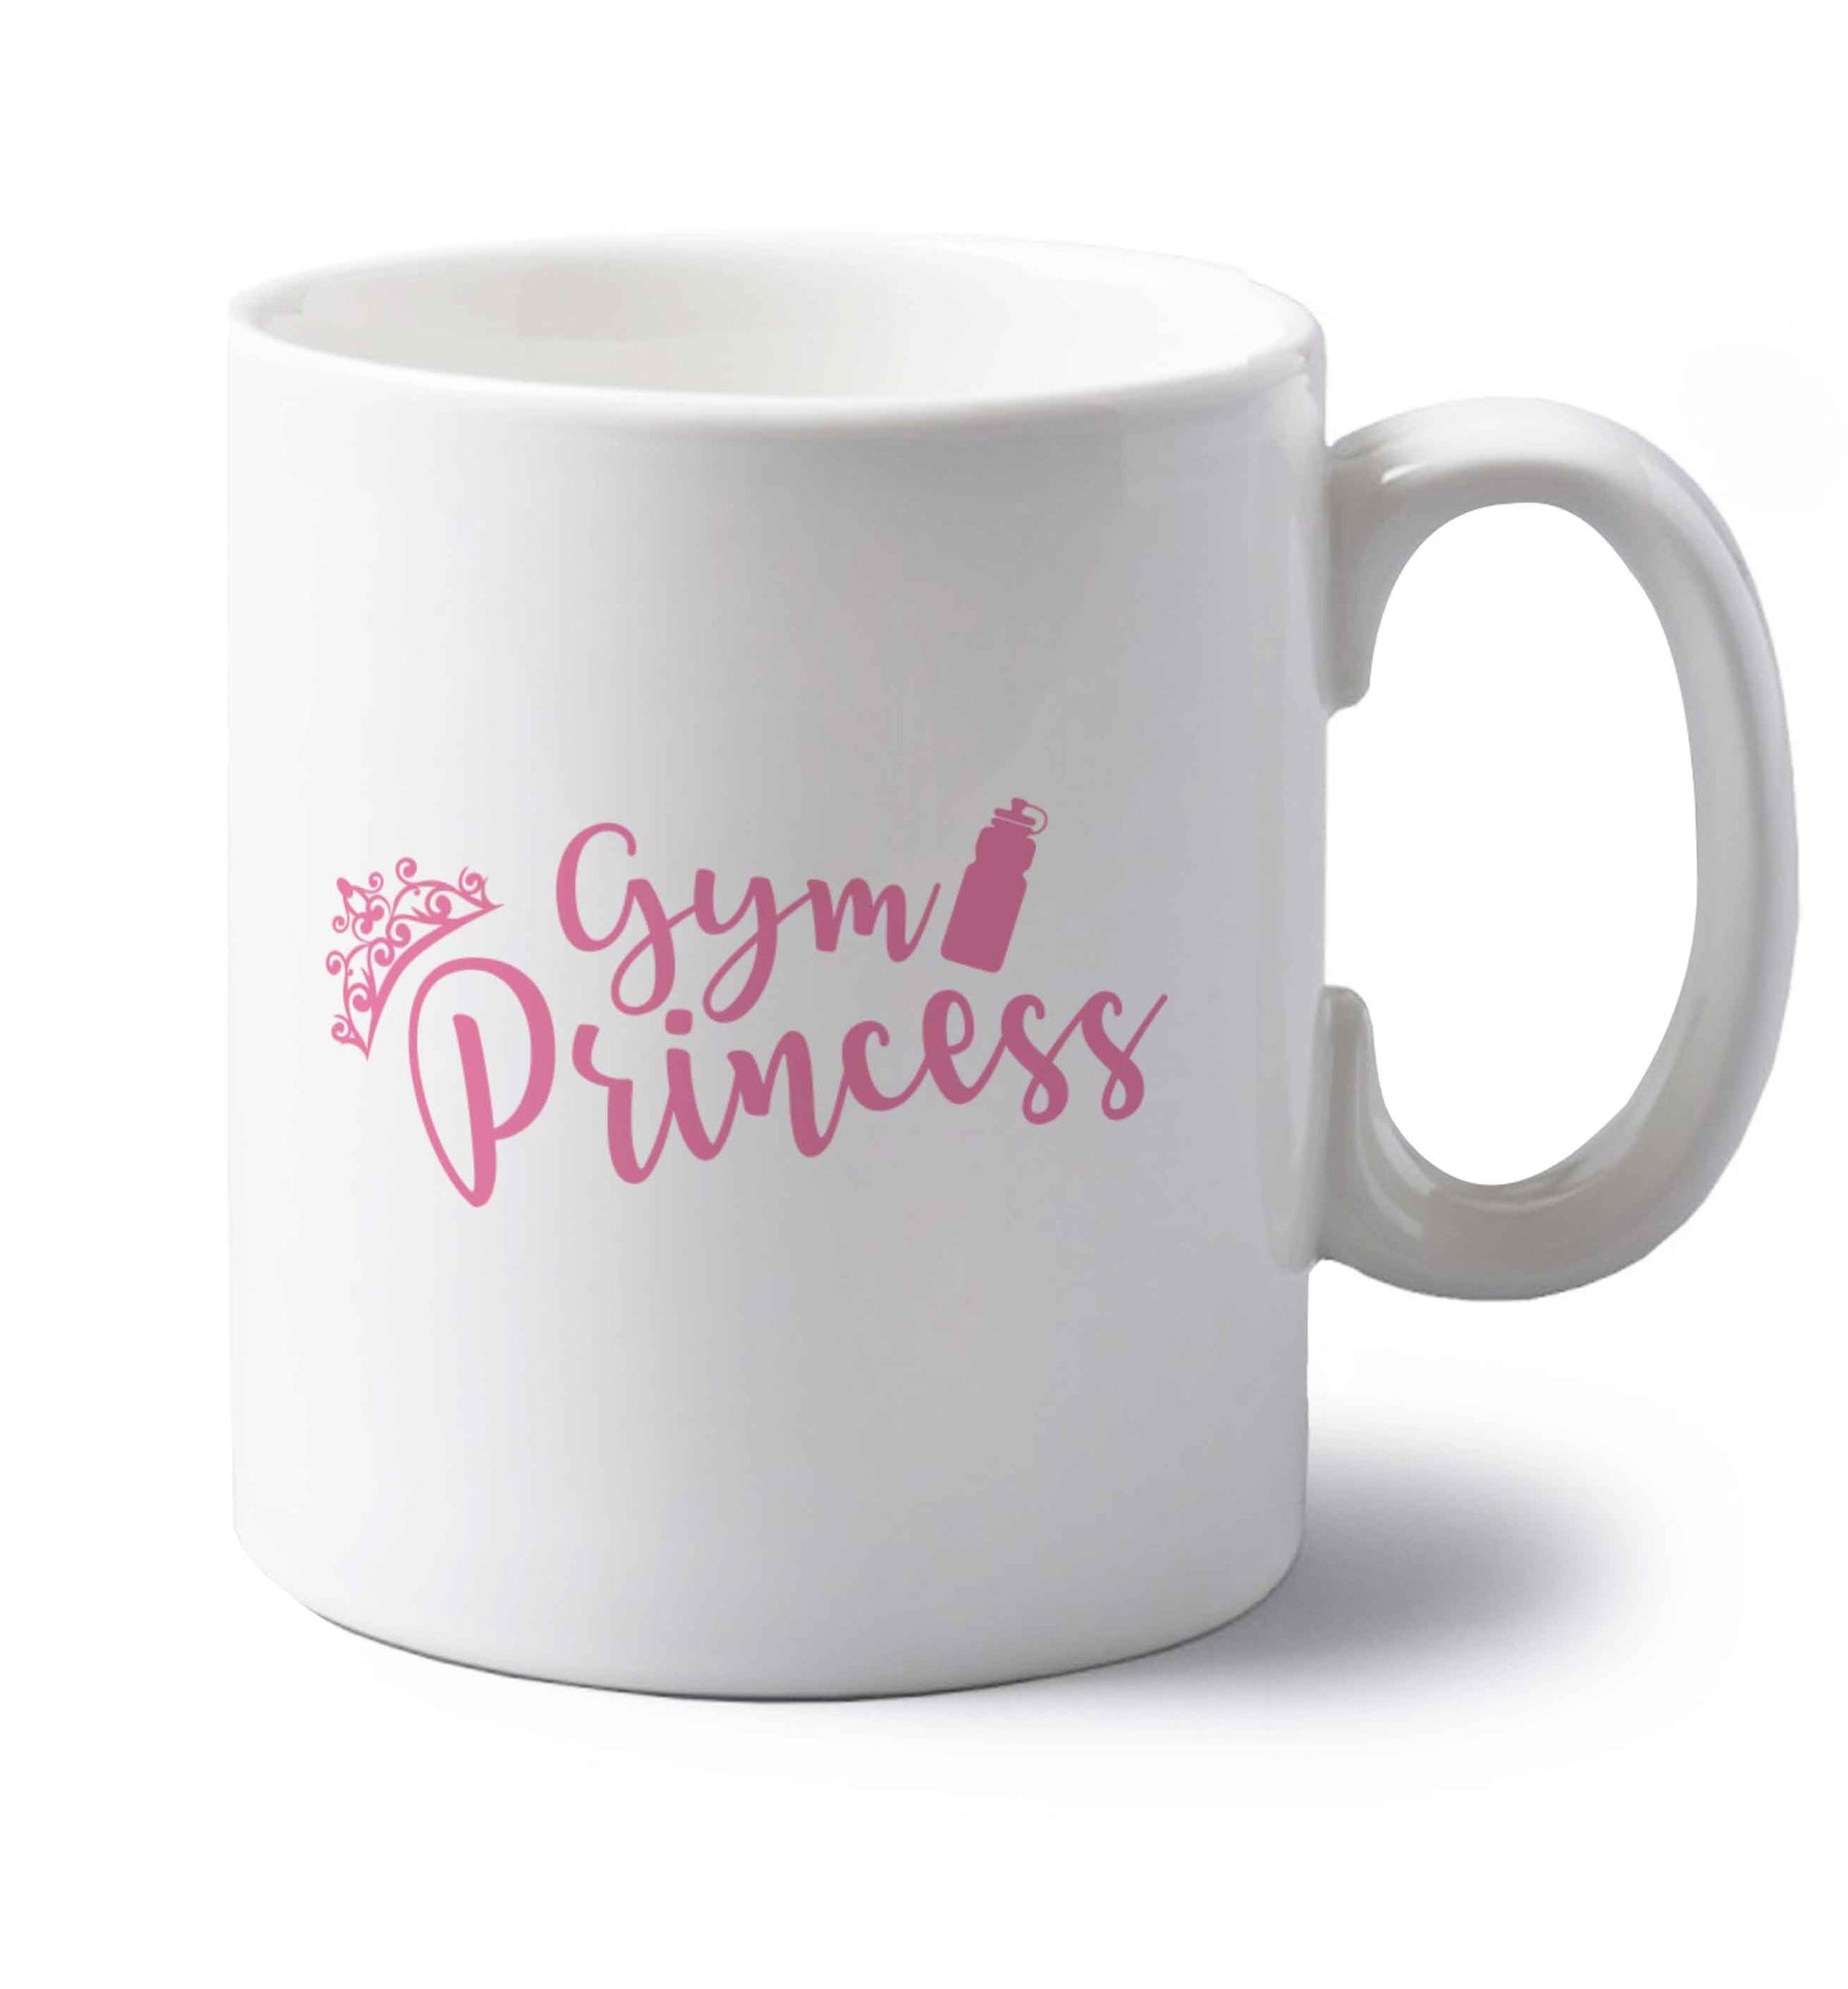 Gym princess left handed white ceramic mug 